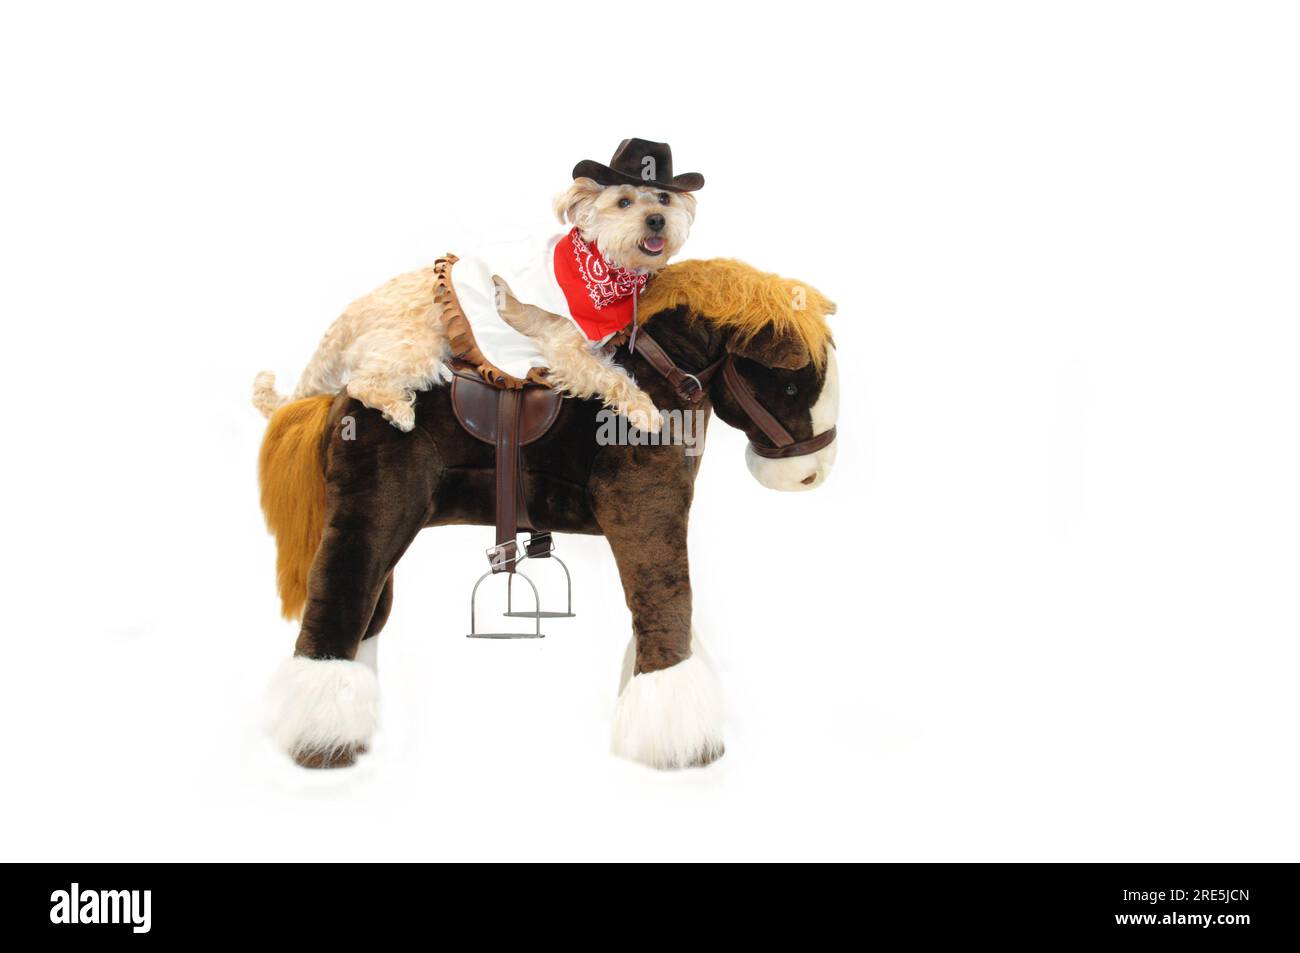 Die Hunde- und Ponyshow umfasst diesen Silky Poo Astride, ein ausgestopftes Pferd. Sie trägt einen Cowboyhut, eine Weste und ein rotes Bandanna. Stockfoto